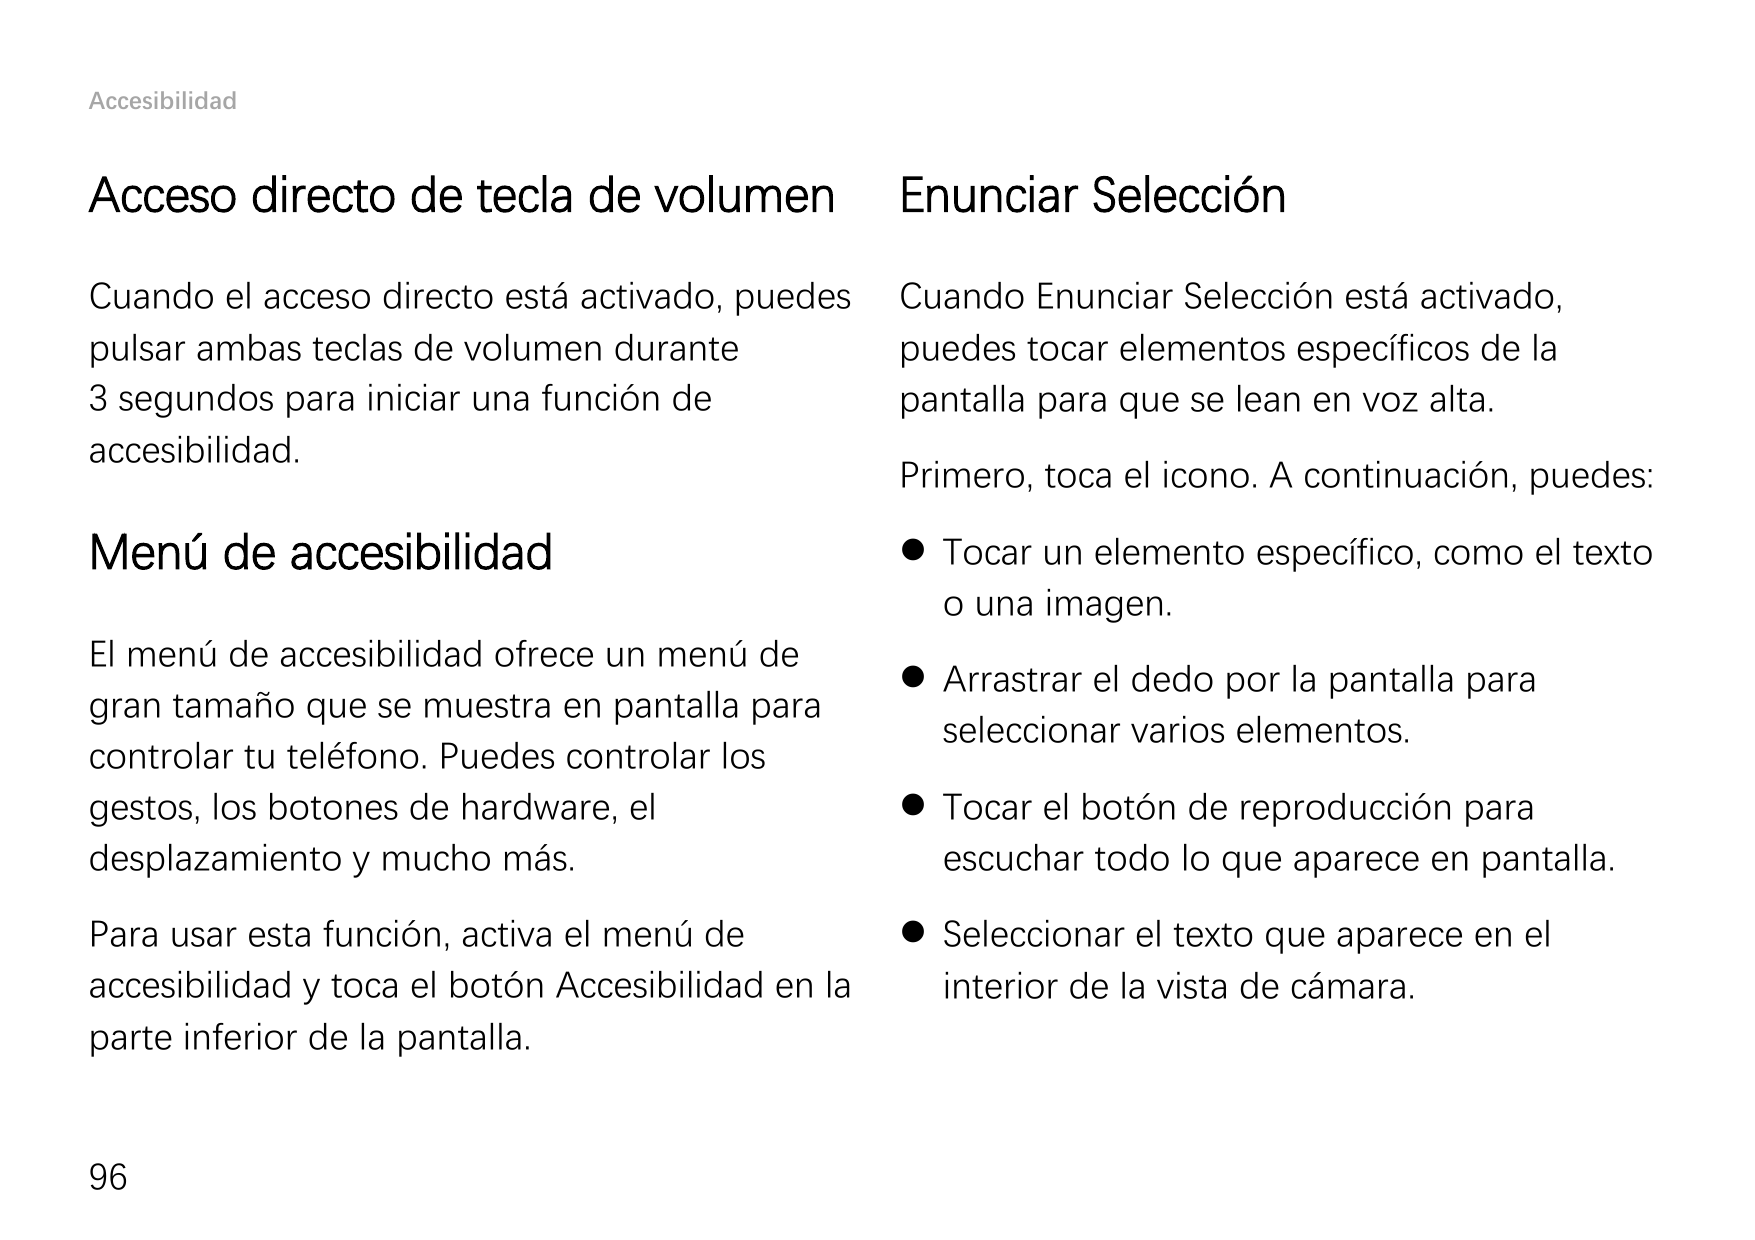 AccesibilidadAcceso directo de tecla de volumenEnunciar SelecciónCuando el acceso directo está activado, puedespulsar ambas tecl